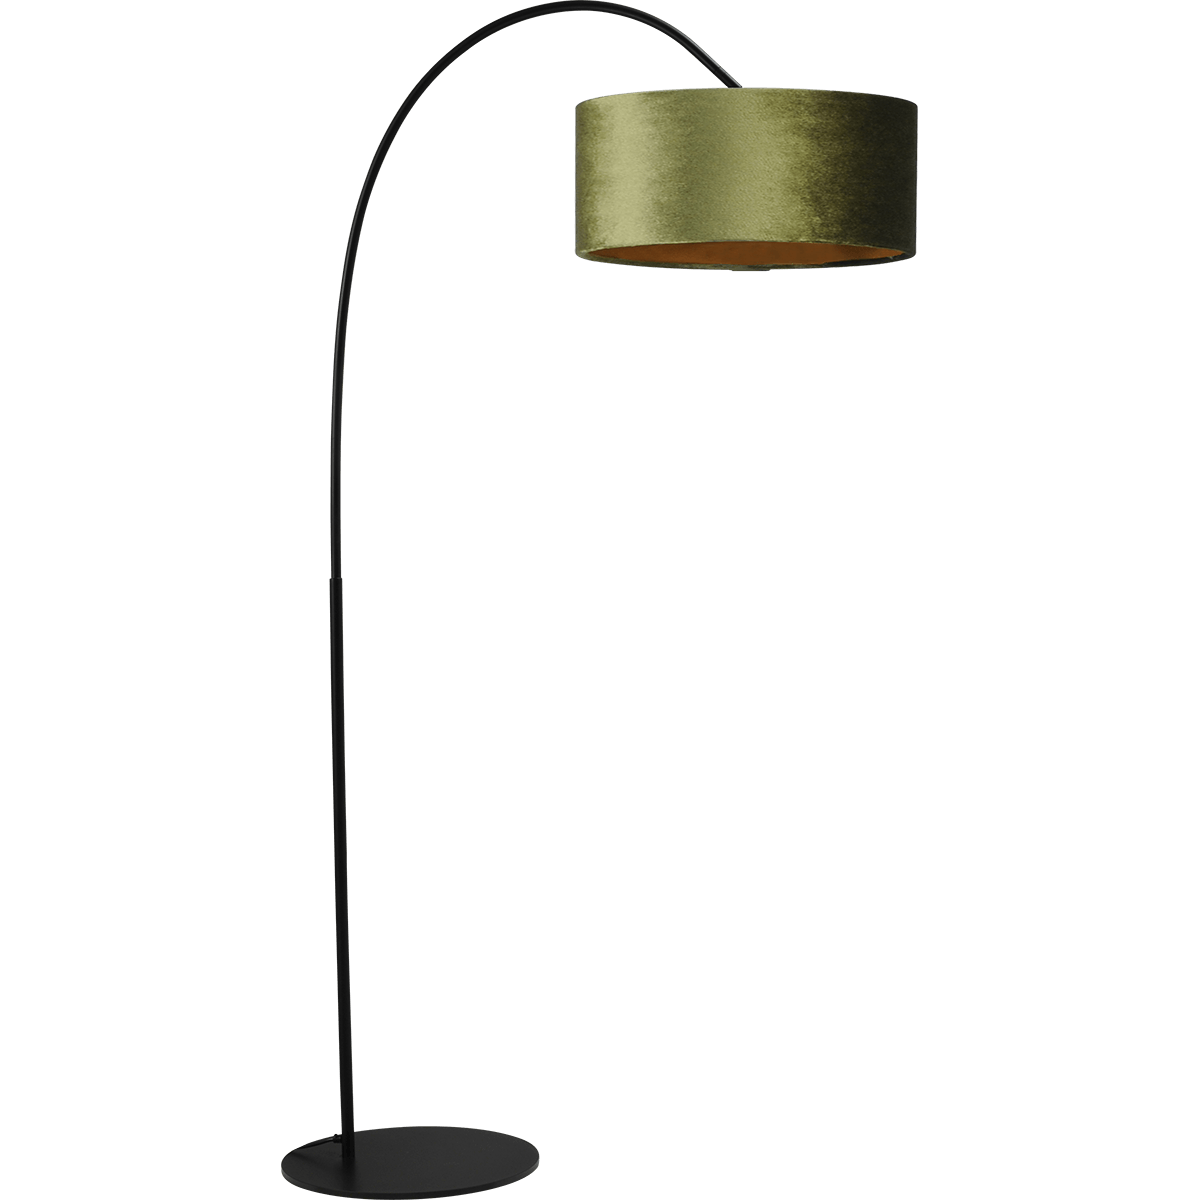 Vloerlamp Arch black - mat zwart - hoogte 183 cm - breedte 88 cm inclusief groene lampenkap - Artik green 52/52/25 cm - uit/aan schakelaar - MASTERLIGHT